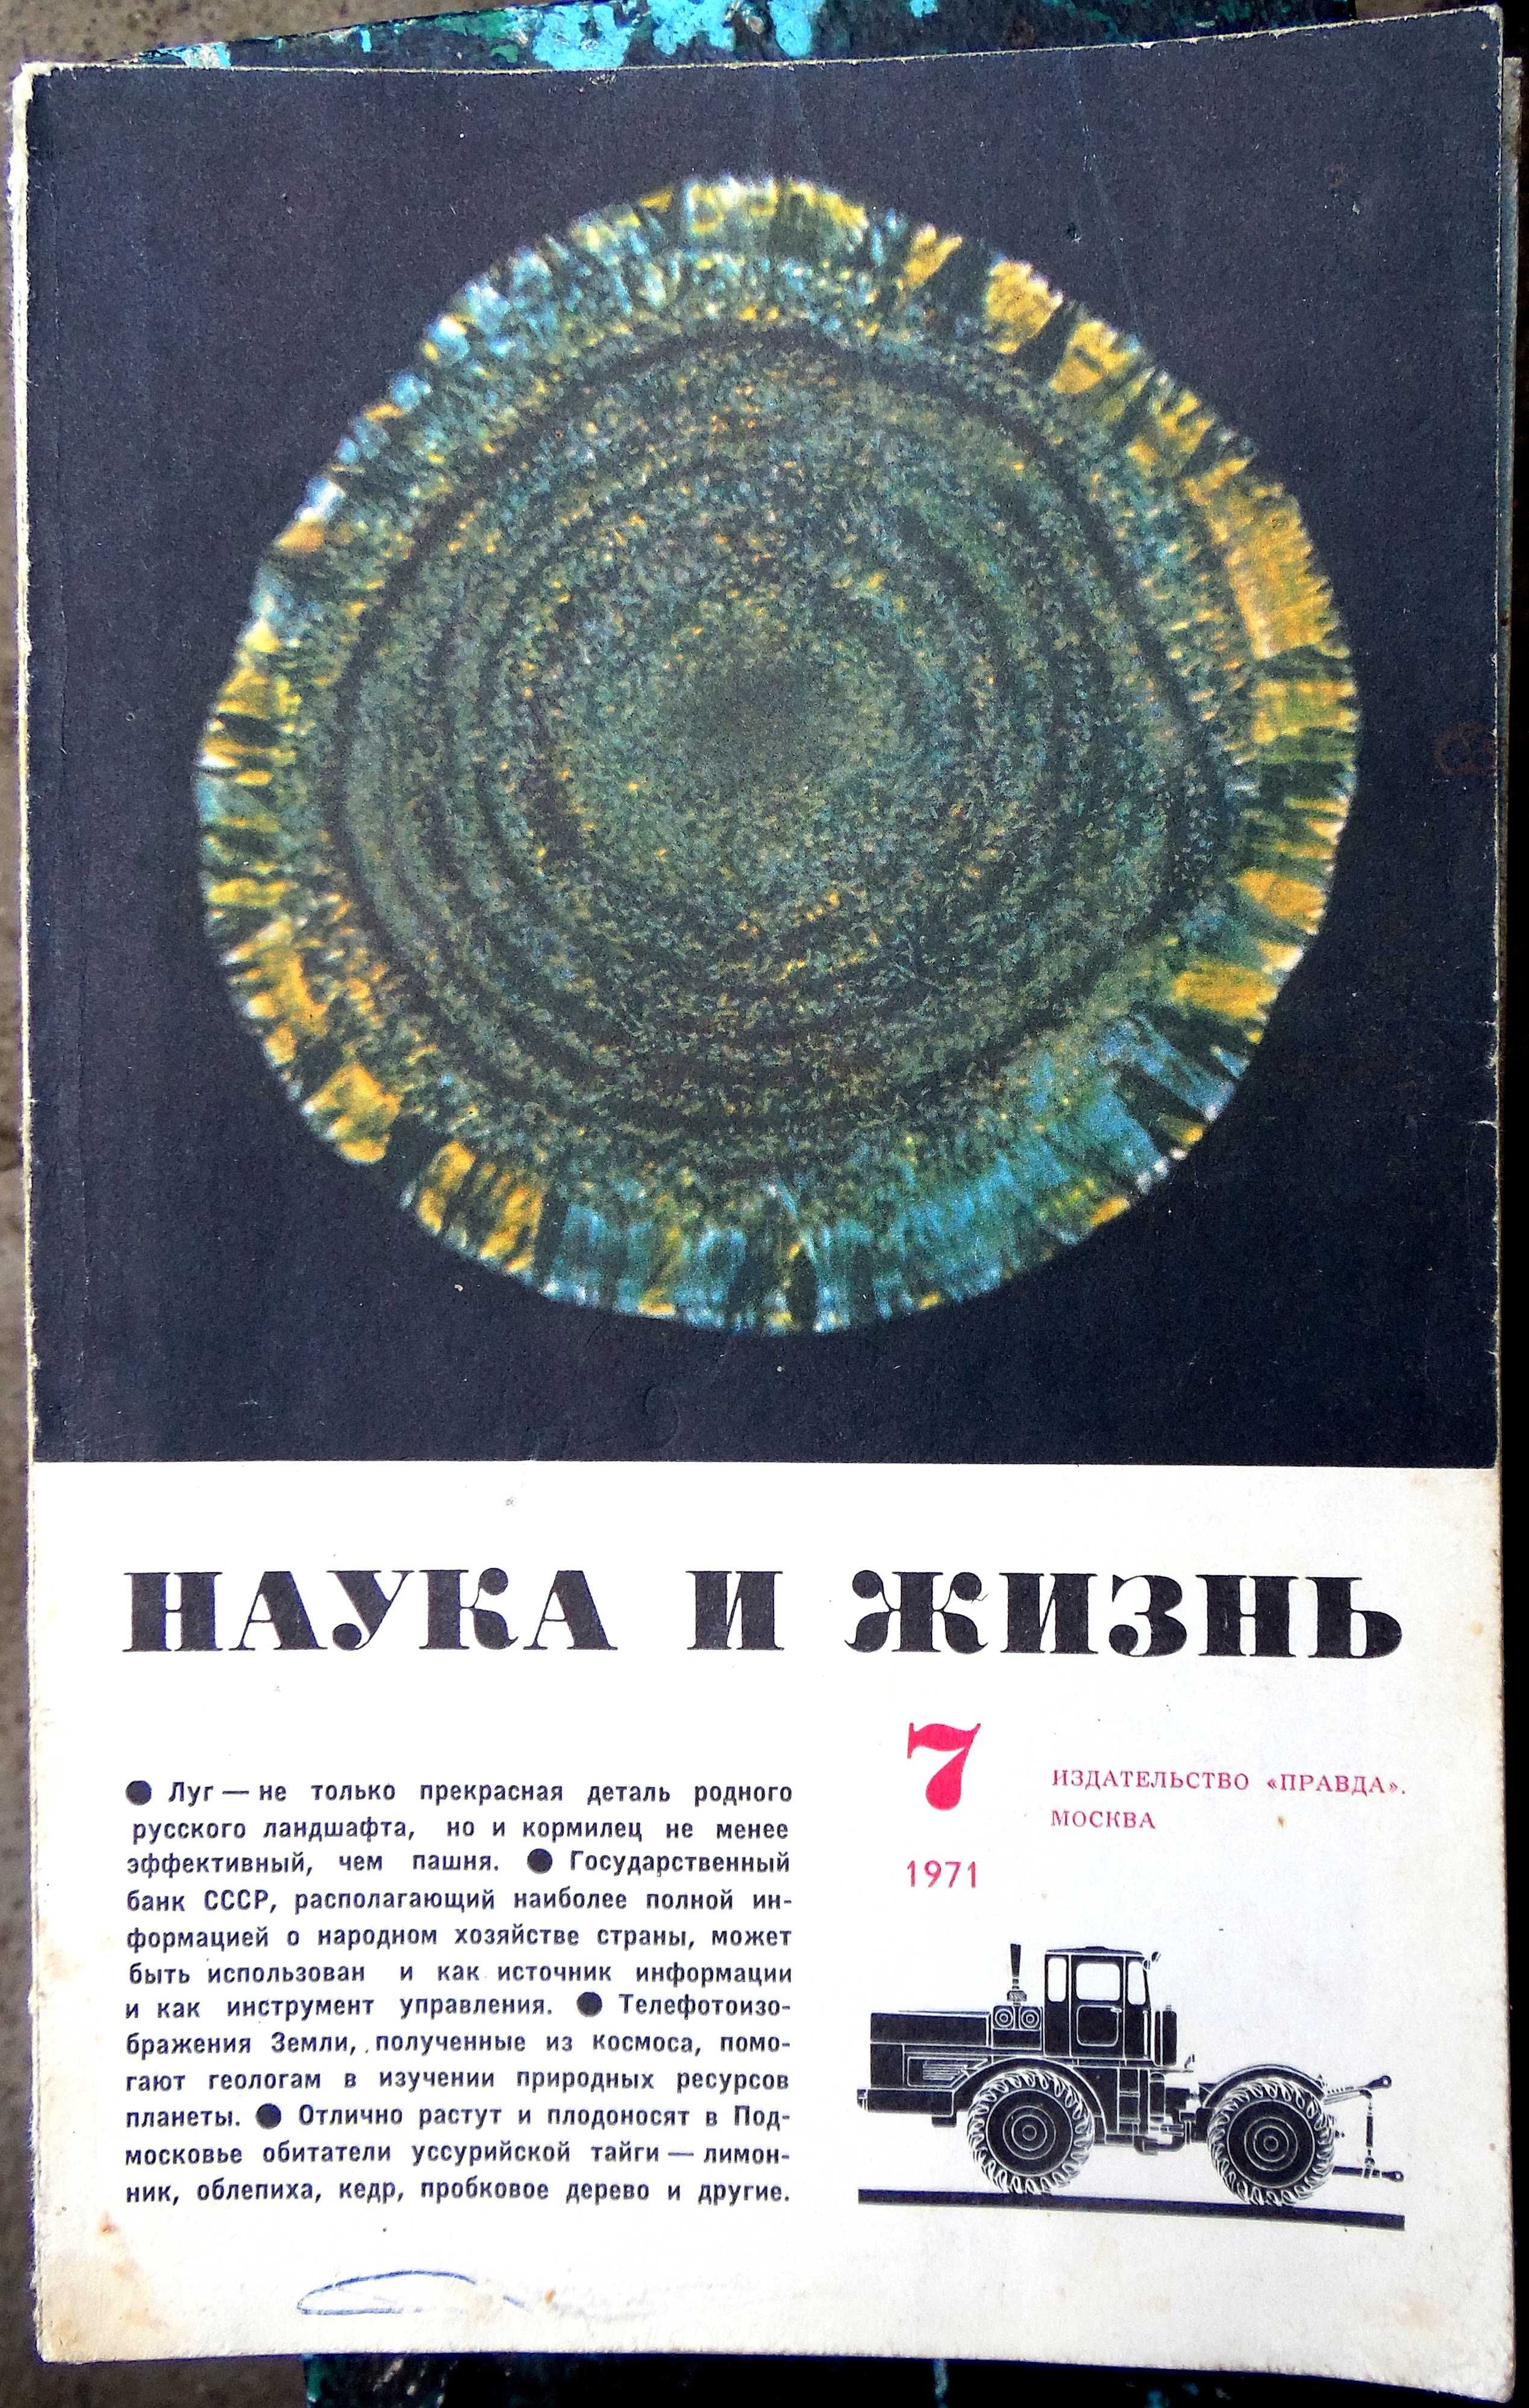 Журналы "Наука и жизнь" 1961, 1971, 1981 - 1990 годов.